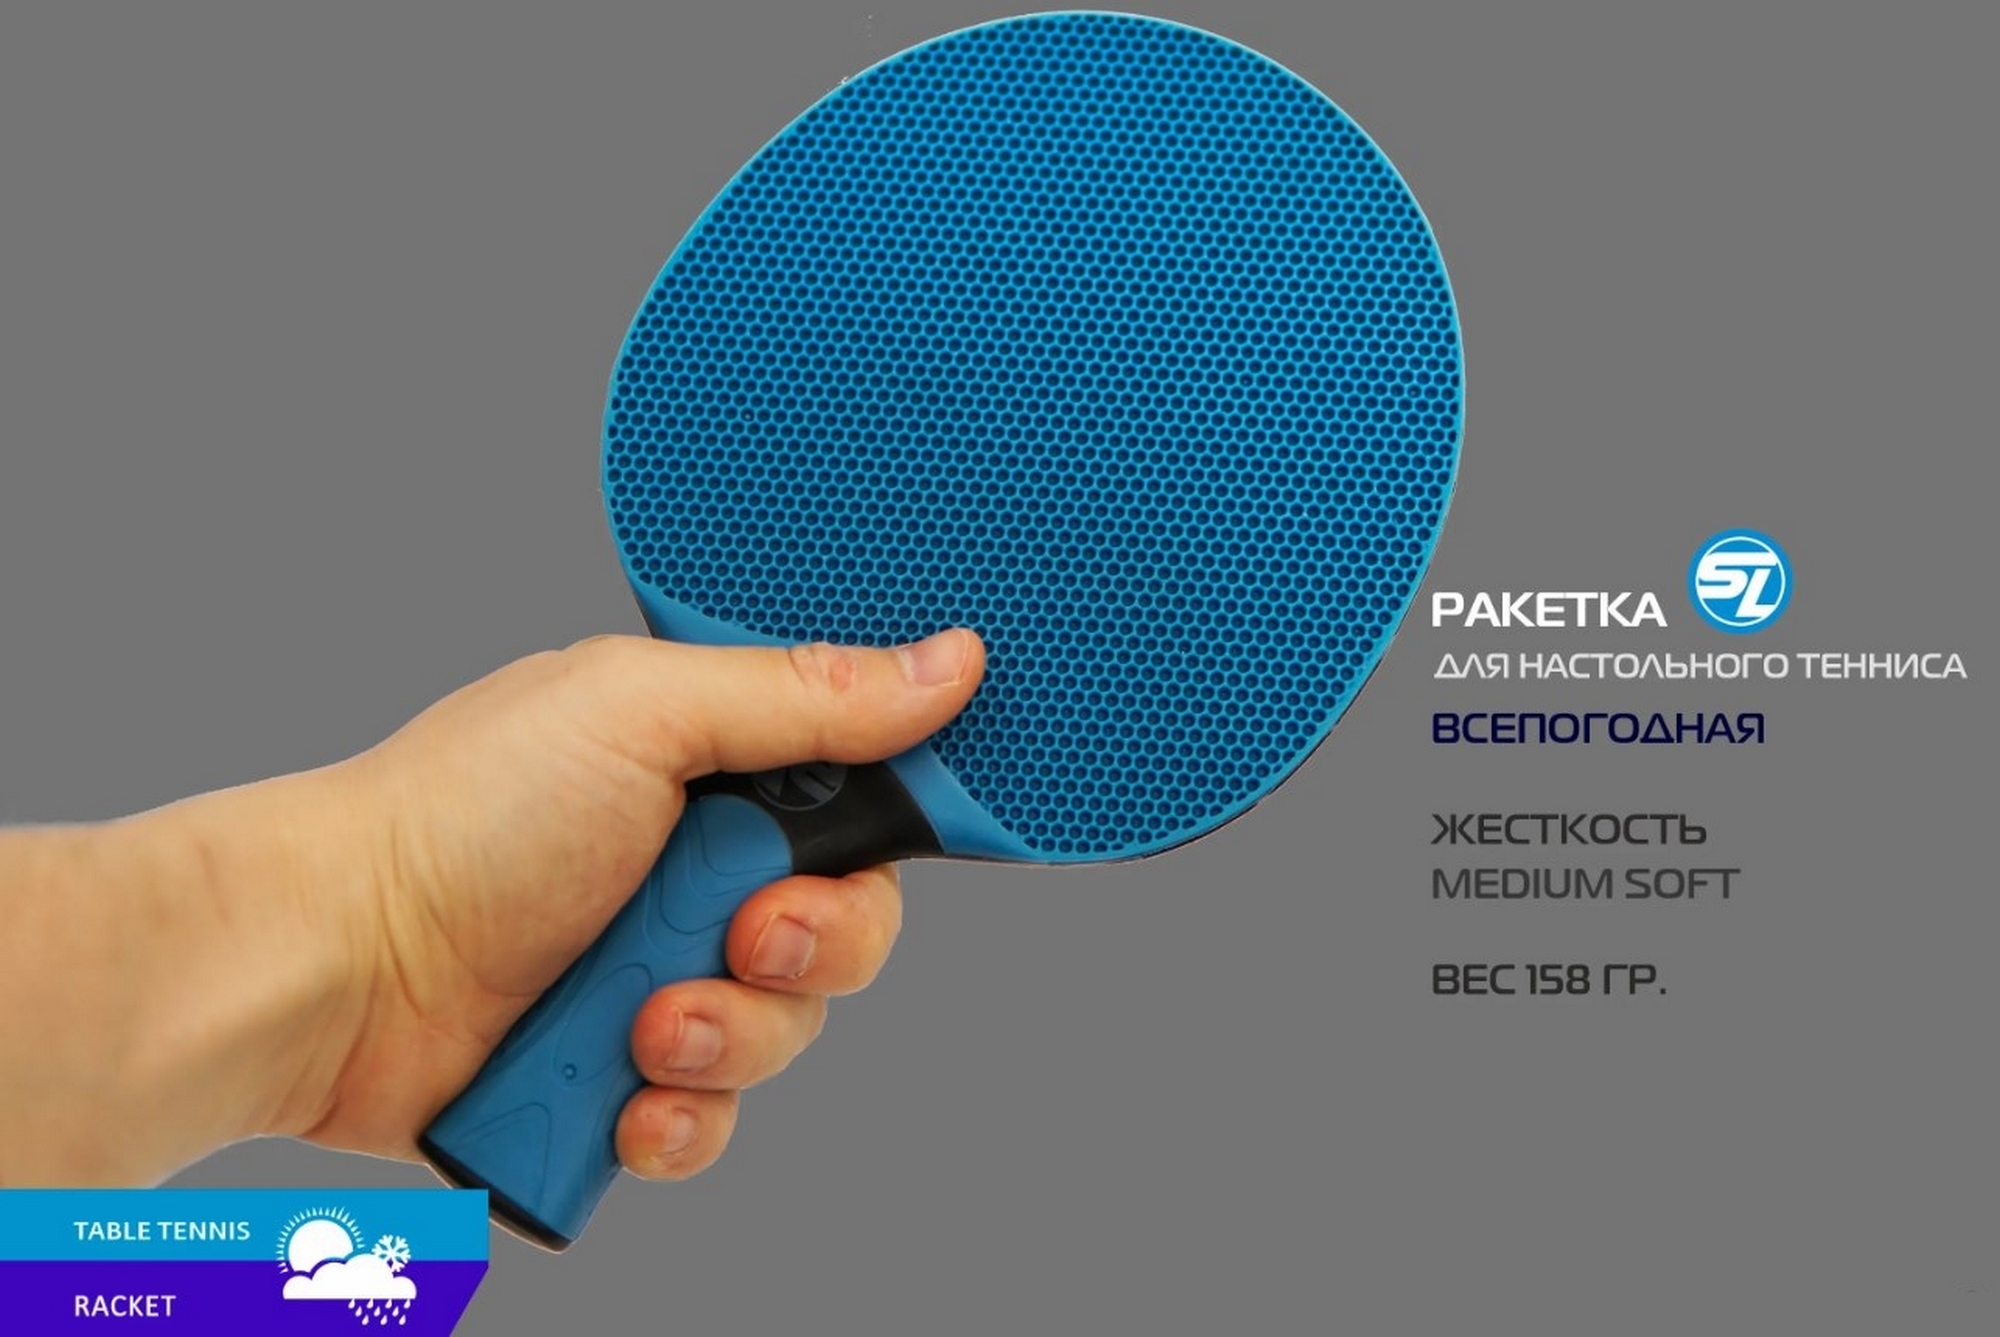 Теннисная ракетка plastic Start line 21120P blue 2000_1337